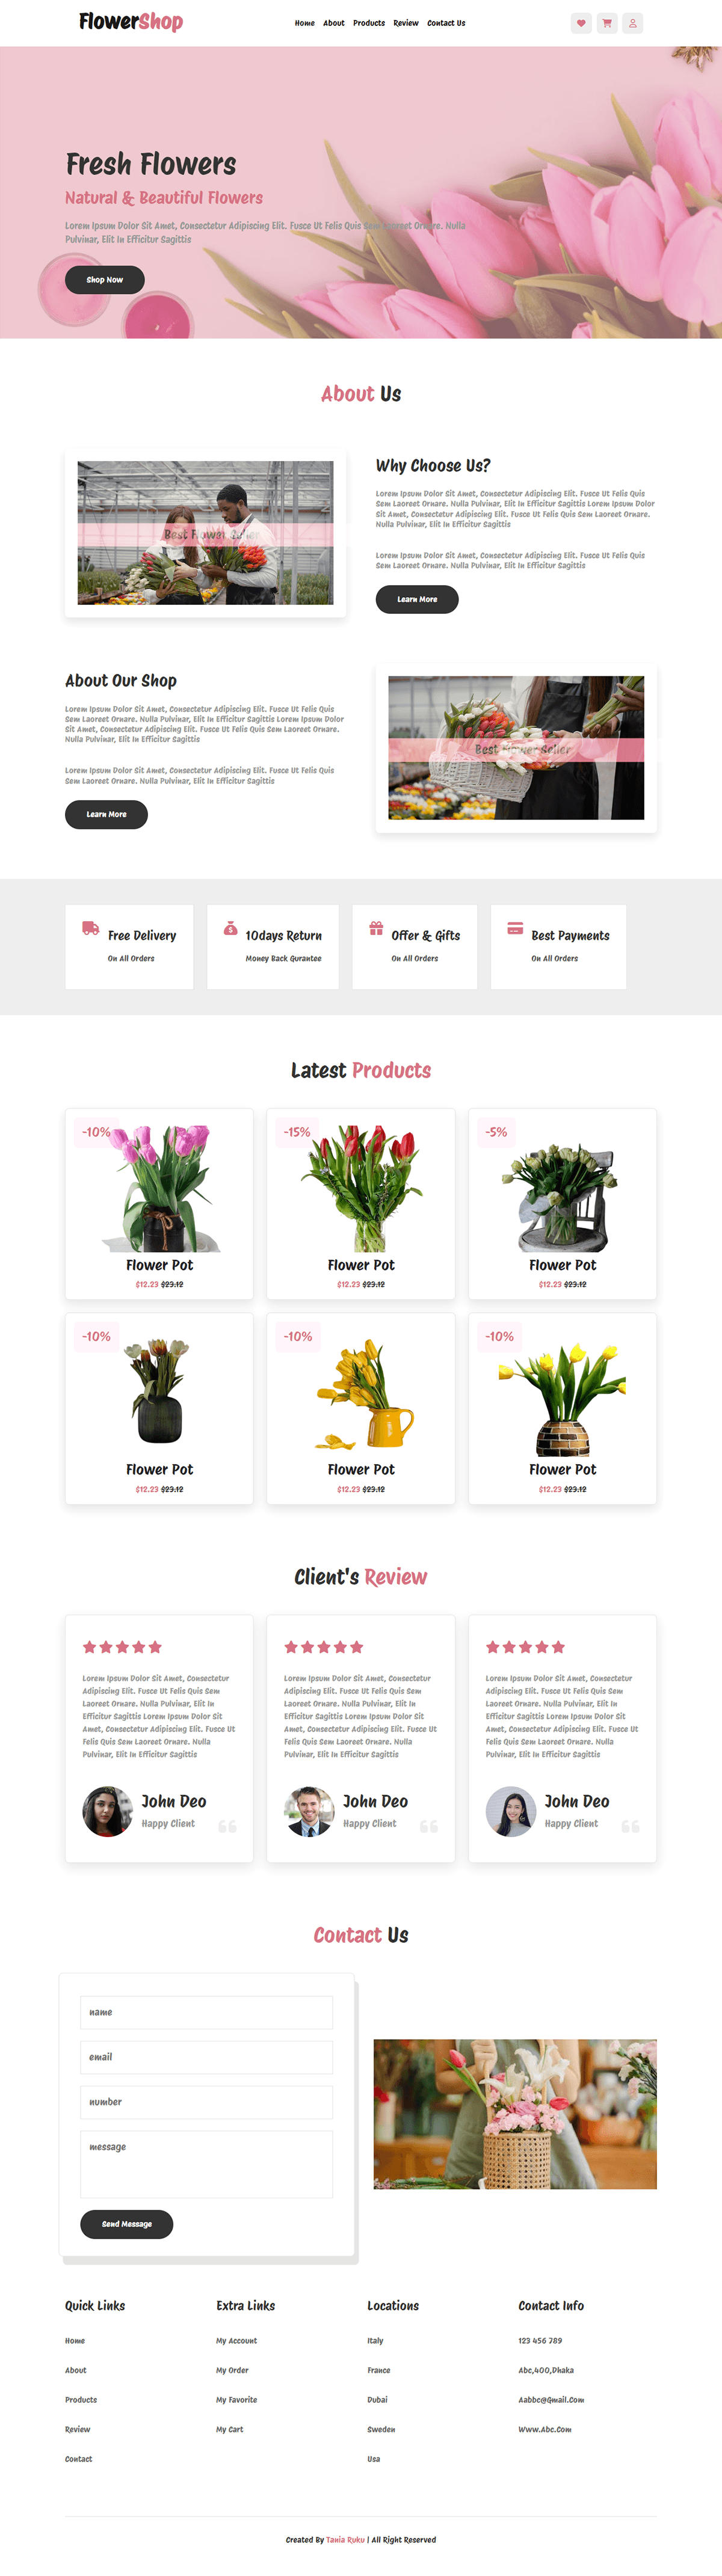 Flower Shop Flower Shop Web Design landing page design landing page website Website Website Design Web designer Webdesign flower shop web flower shop website